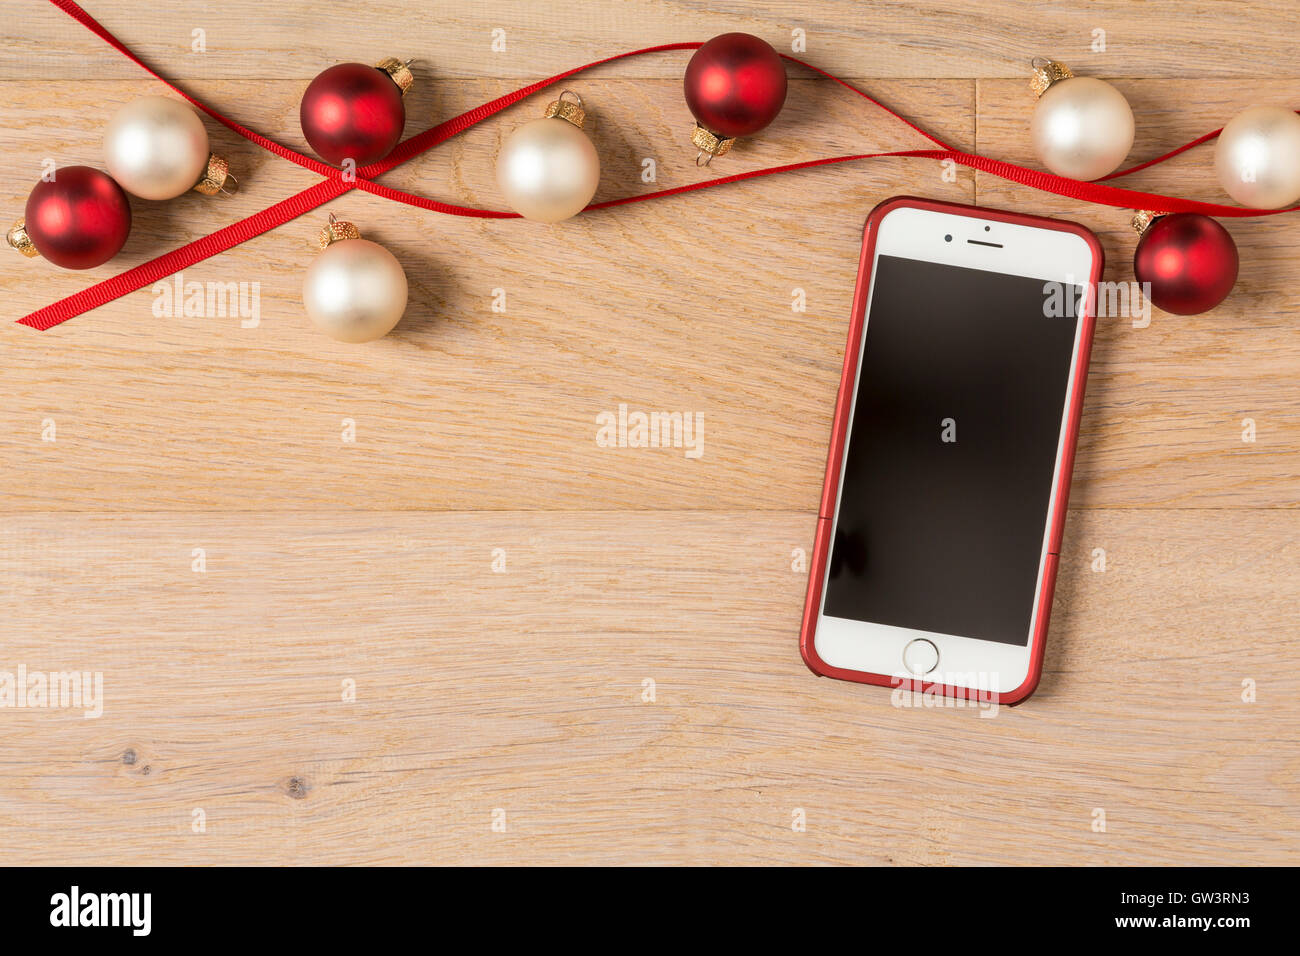 Immagini Natale Per Iphone 6.Telefono Cellulare Iphone 6 Con Per Le Feste Di Natale Decorazioni Su Legno Rustico Sfondo Foto Stock Alamy